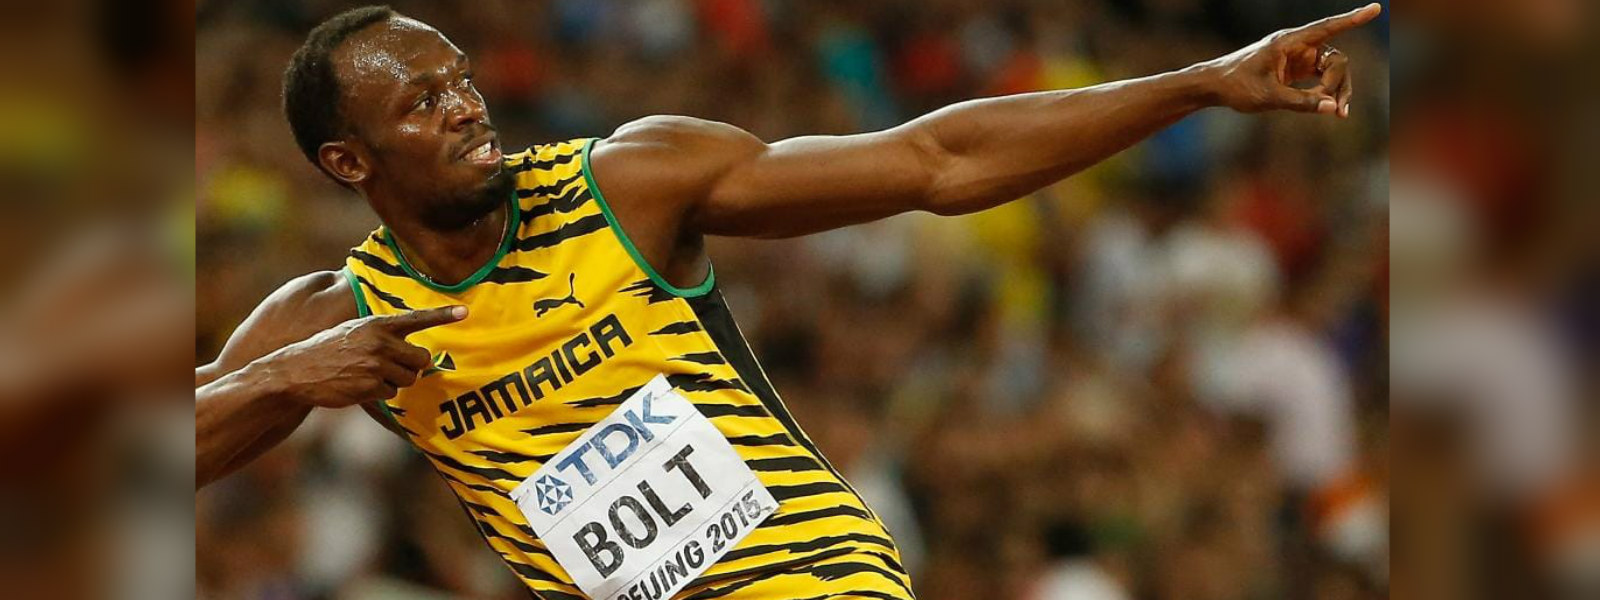 Fan frenzy as Usain Bolt arrives in Sydney